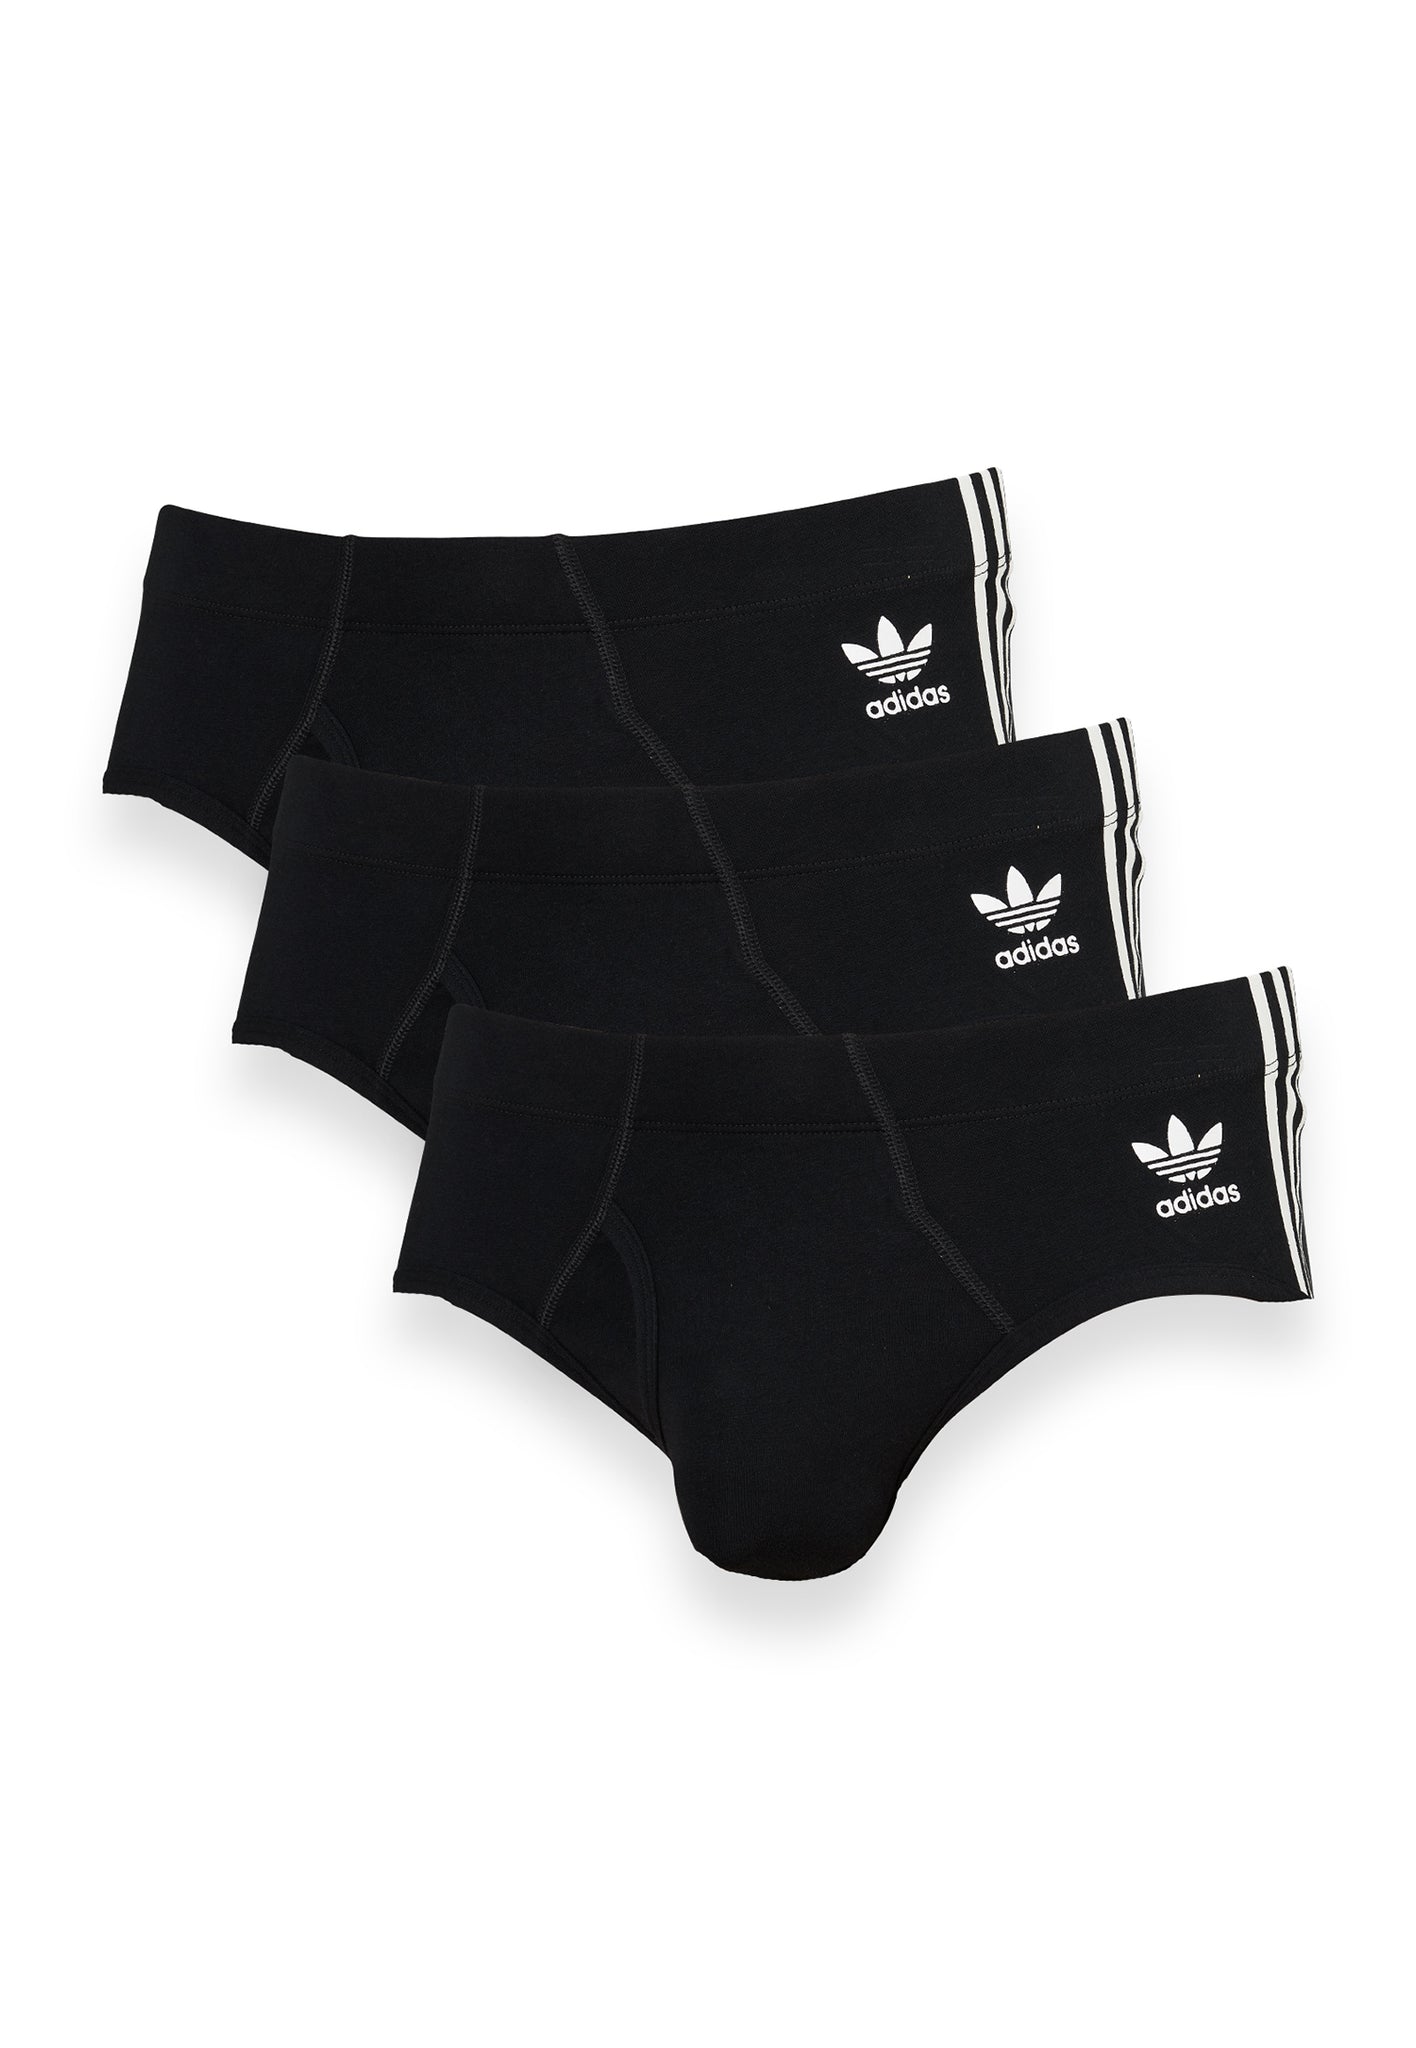 adidas Men's Stretch Cotton Brief Underwear (3-Pack), Black/Light